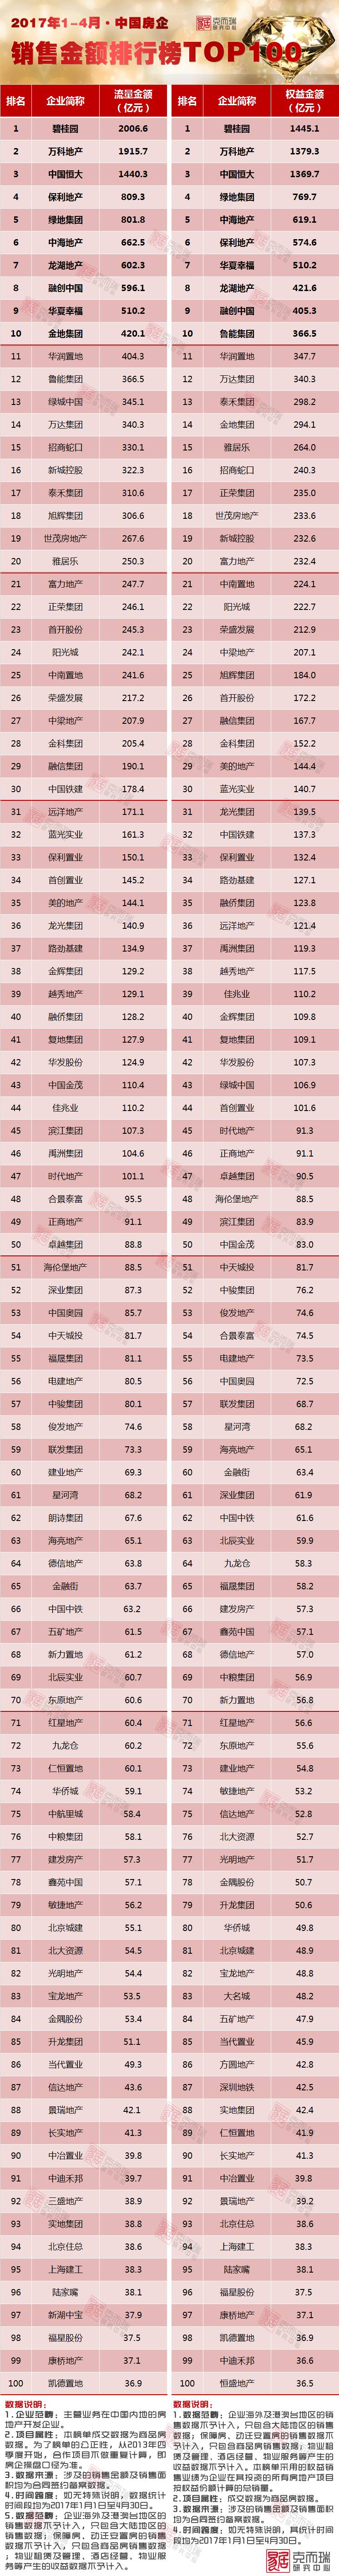 《2017年1-4月中国房地产企业销售TOP100》排行榜发布